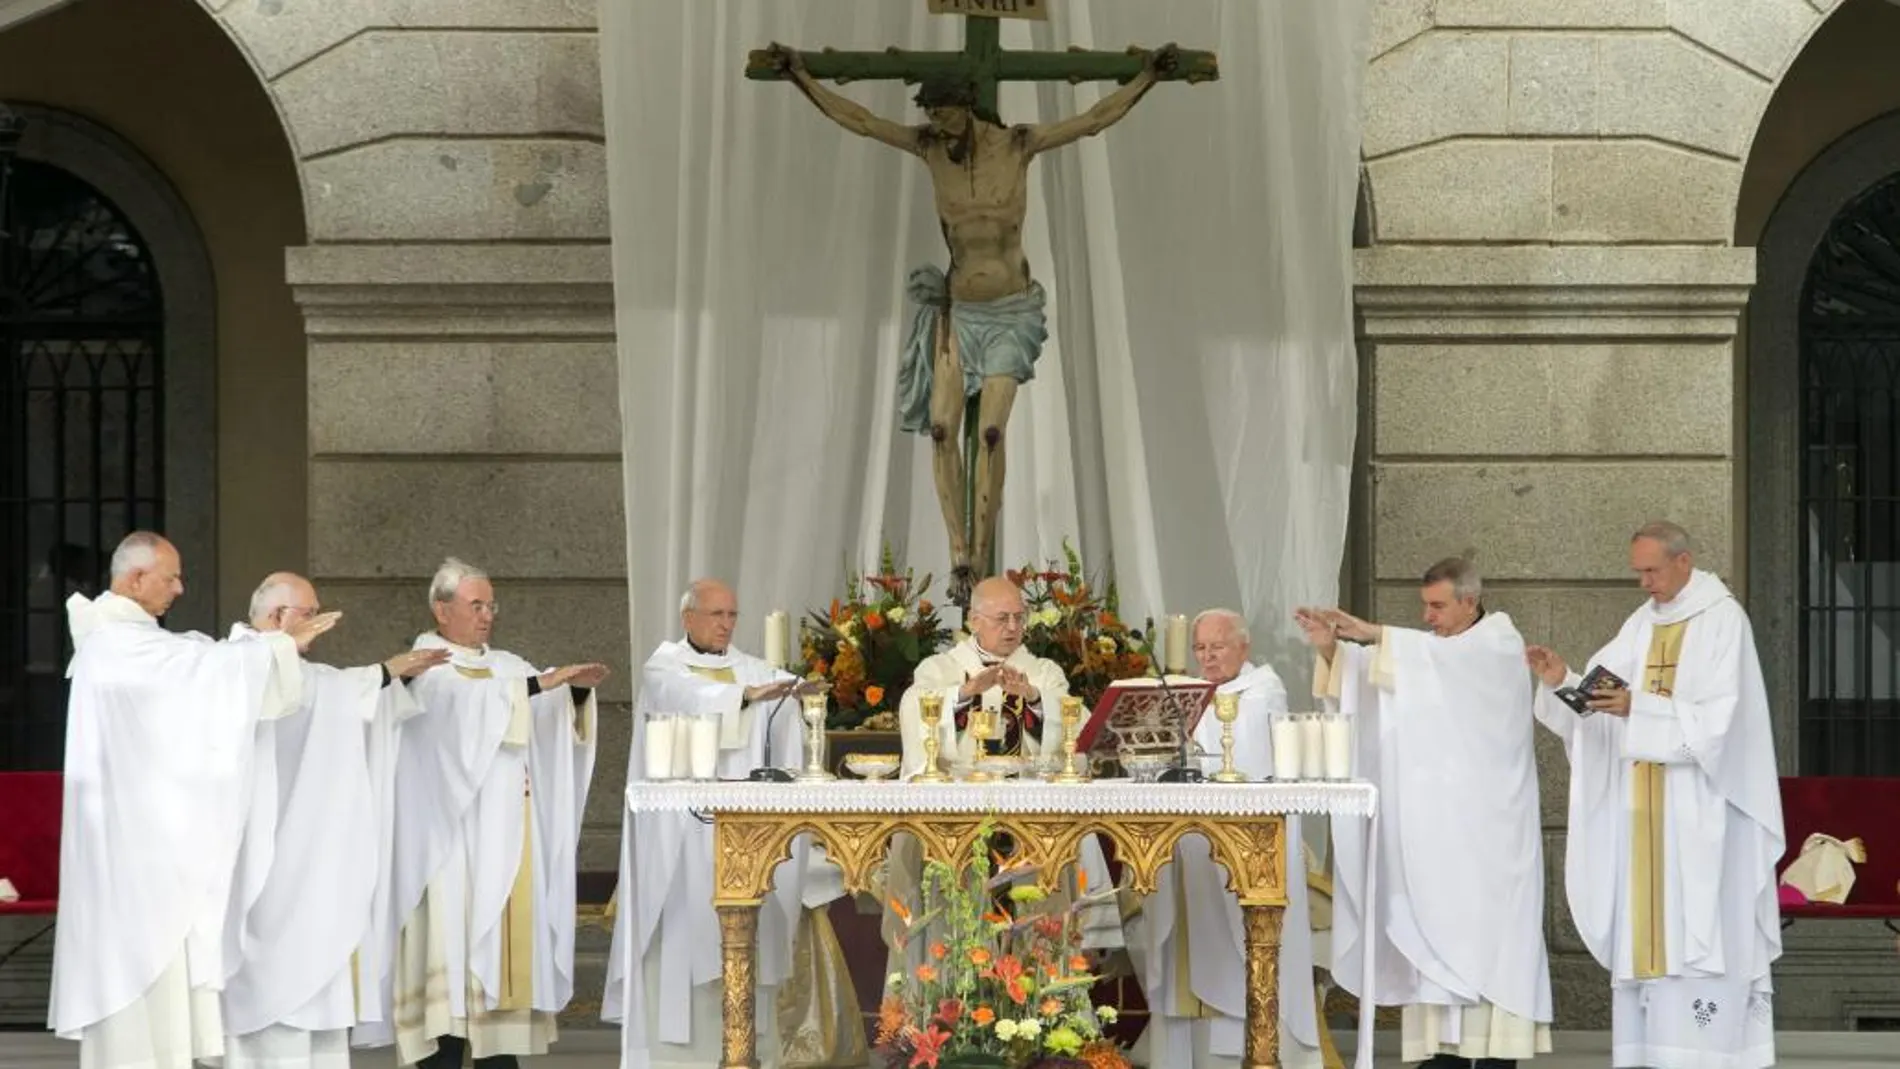 Ricardo Blázquez preside la eucaristía, concelebrada por unos 80 sacerdotes, que abre de manera oficial el Año Jubilar